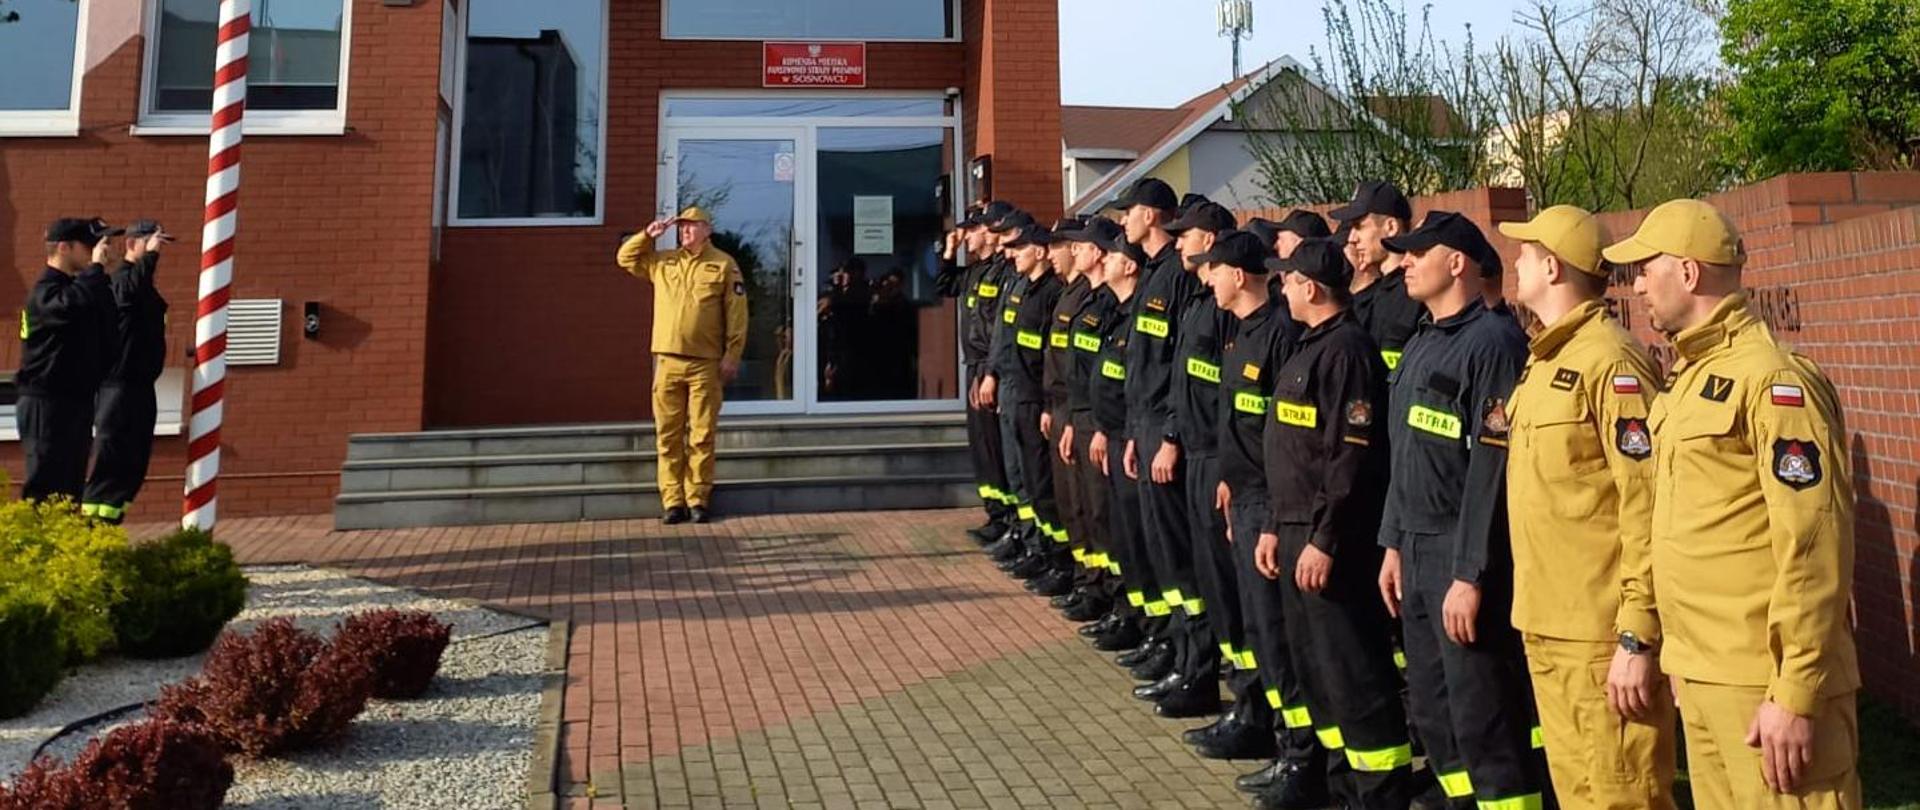 Poranna zmiana służby w siedzibie jednostki ratowniczo-gaśniczej Komendy Miejskiej Państwowej Straży Pożarnej w Sosnowcu podczas uroczystego podniesienia flagi państwowej.